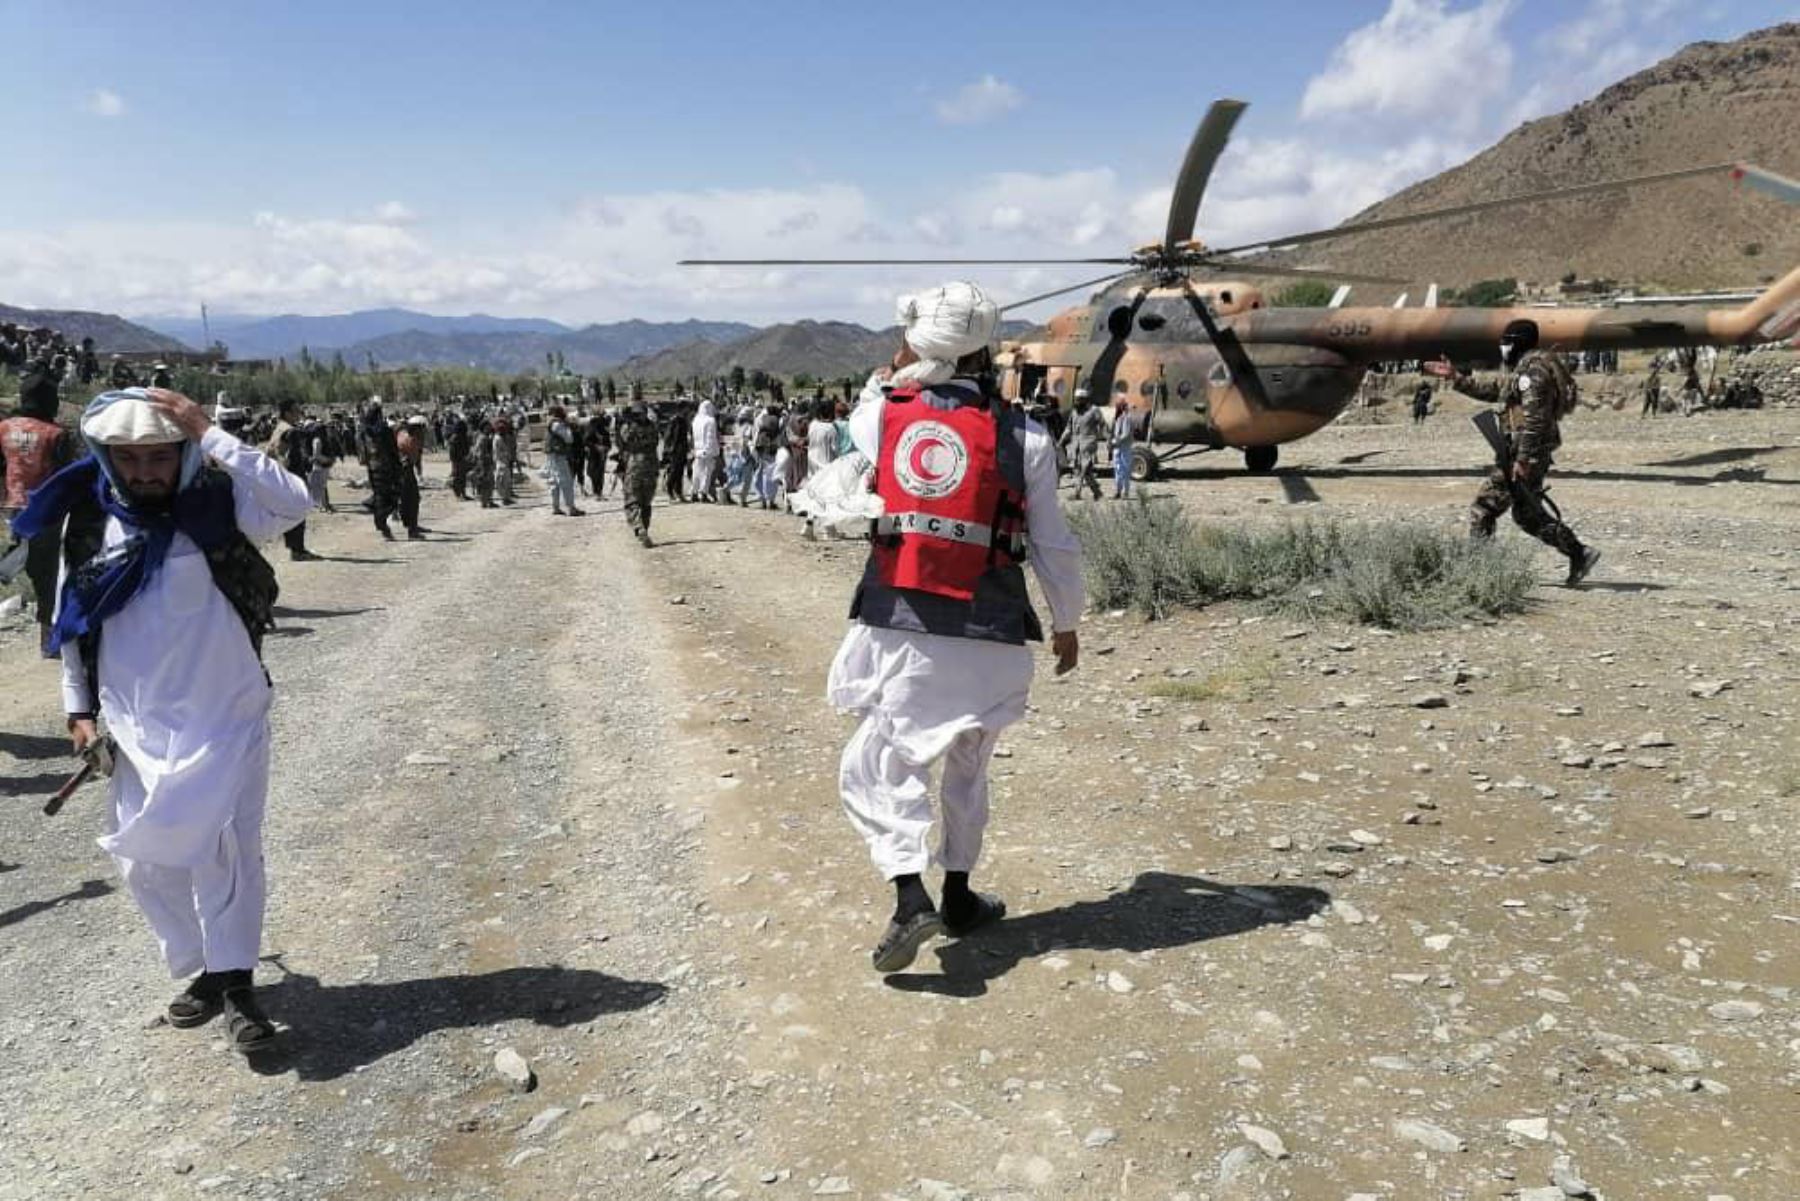 El Gobierno de los talibanes aseguró que emplea todos sus recursos en las operaciones de rescate, con el envío de asistencia, helicópteros y suministros médicos, al tiempo que ha pedido ayuda a las organizaciones humanitarias en el país. Foto: Kabul News